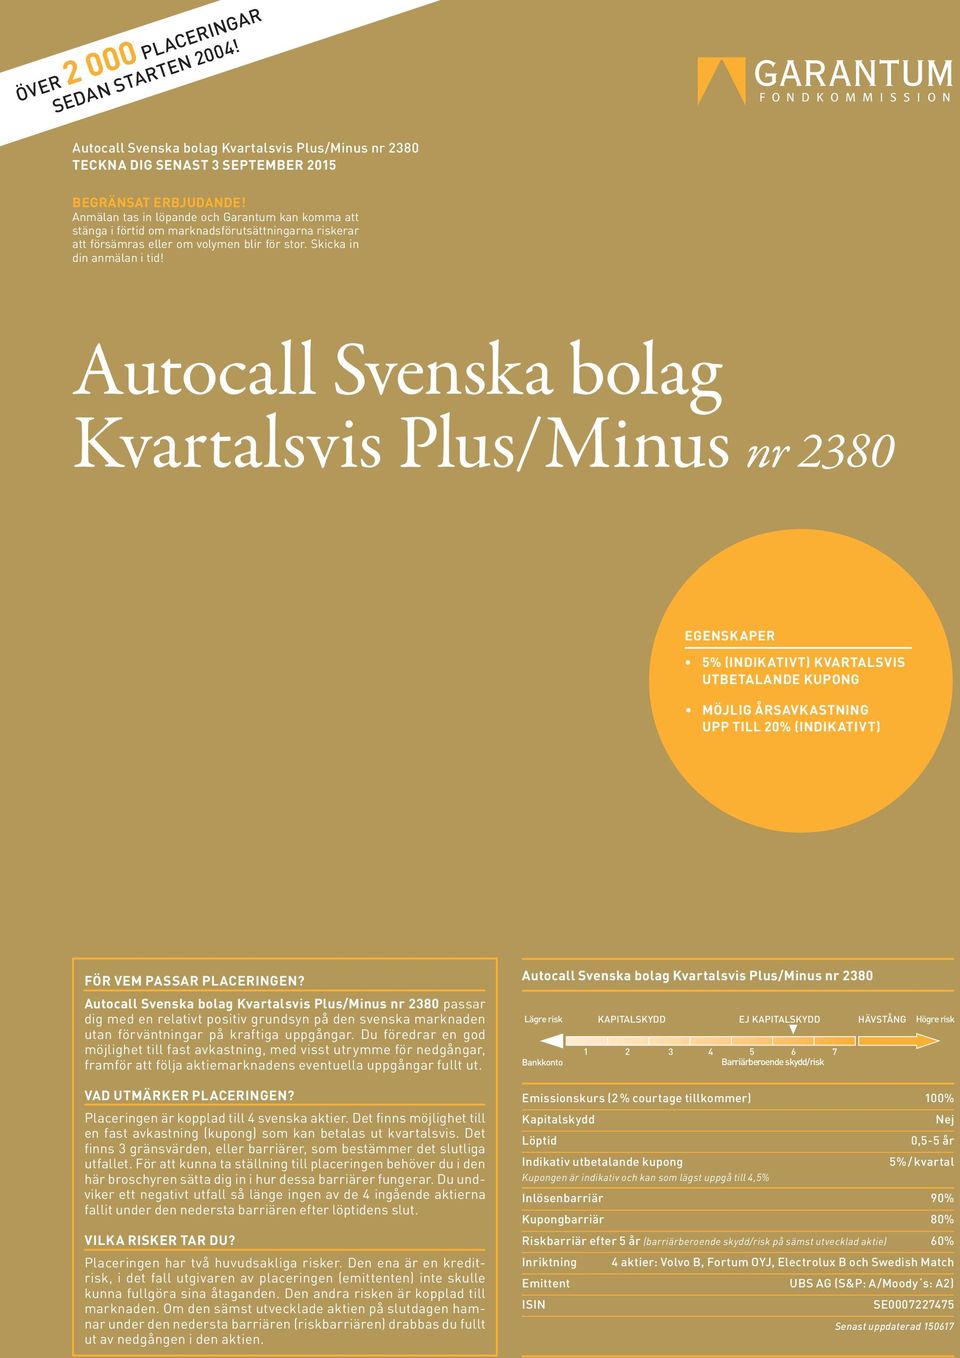 Autocall Svenska bolag Kvartalsvis Plus/Minus nr 2380 EGENSKAPER 5% (INDIKATIVT) KVARTALSVIS UTBETALANDE KUPONG MÖJLIG ÅRSAVKASTNING UPP TILL 20% (INDIKATIVT) FÖR VEM PASSAR PLACERINGEN?